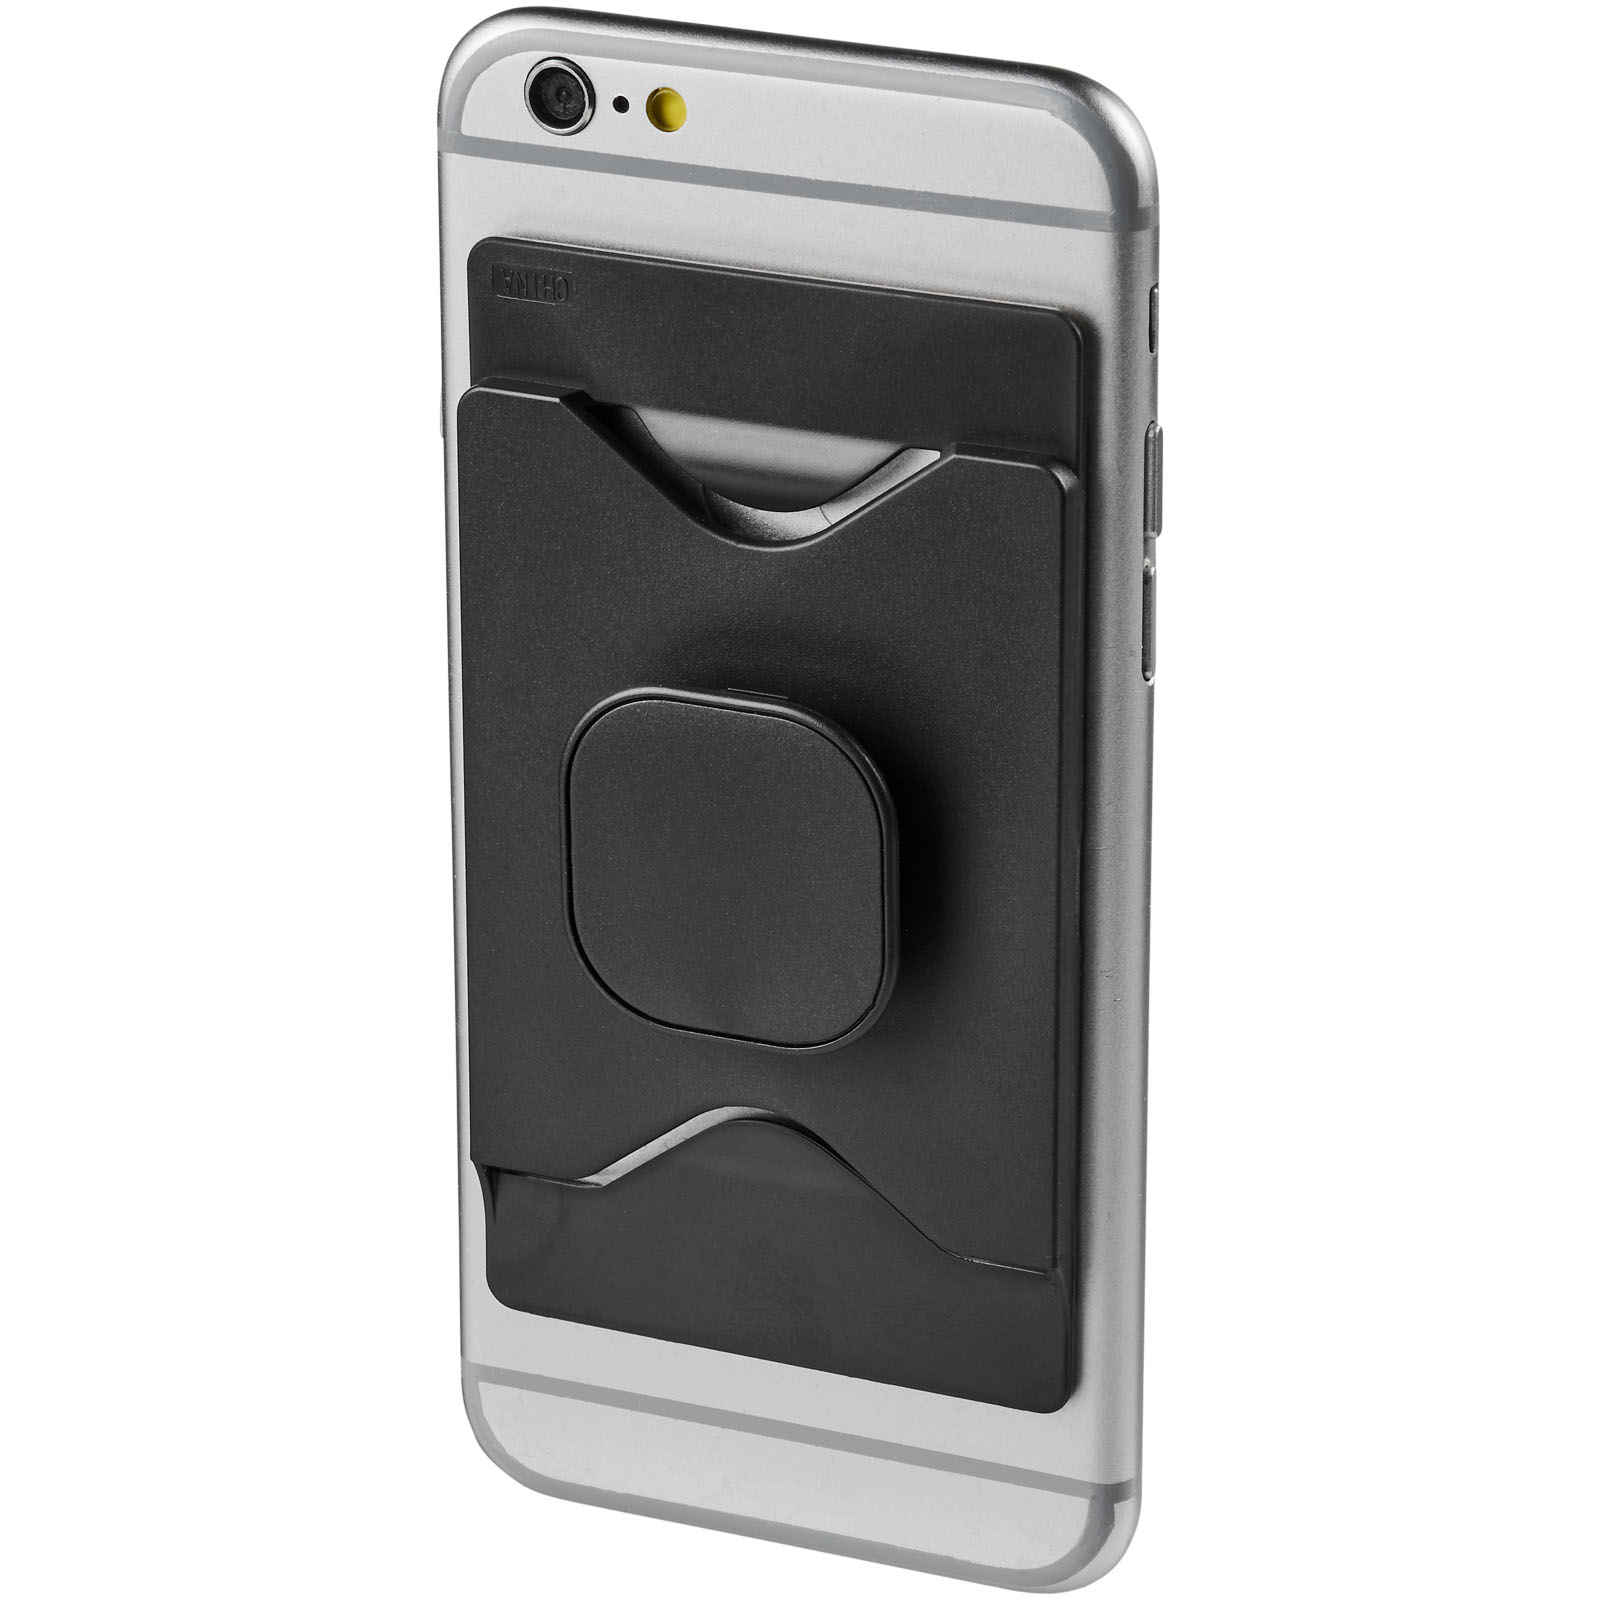 Cavalletto adesivo per smartphone e portafoglio porta carte - Pontida